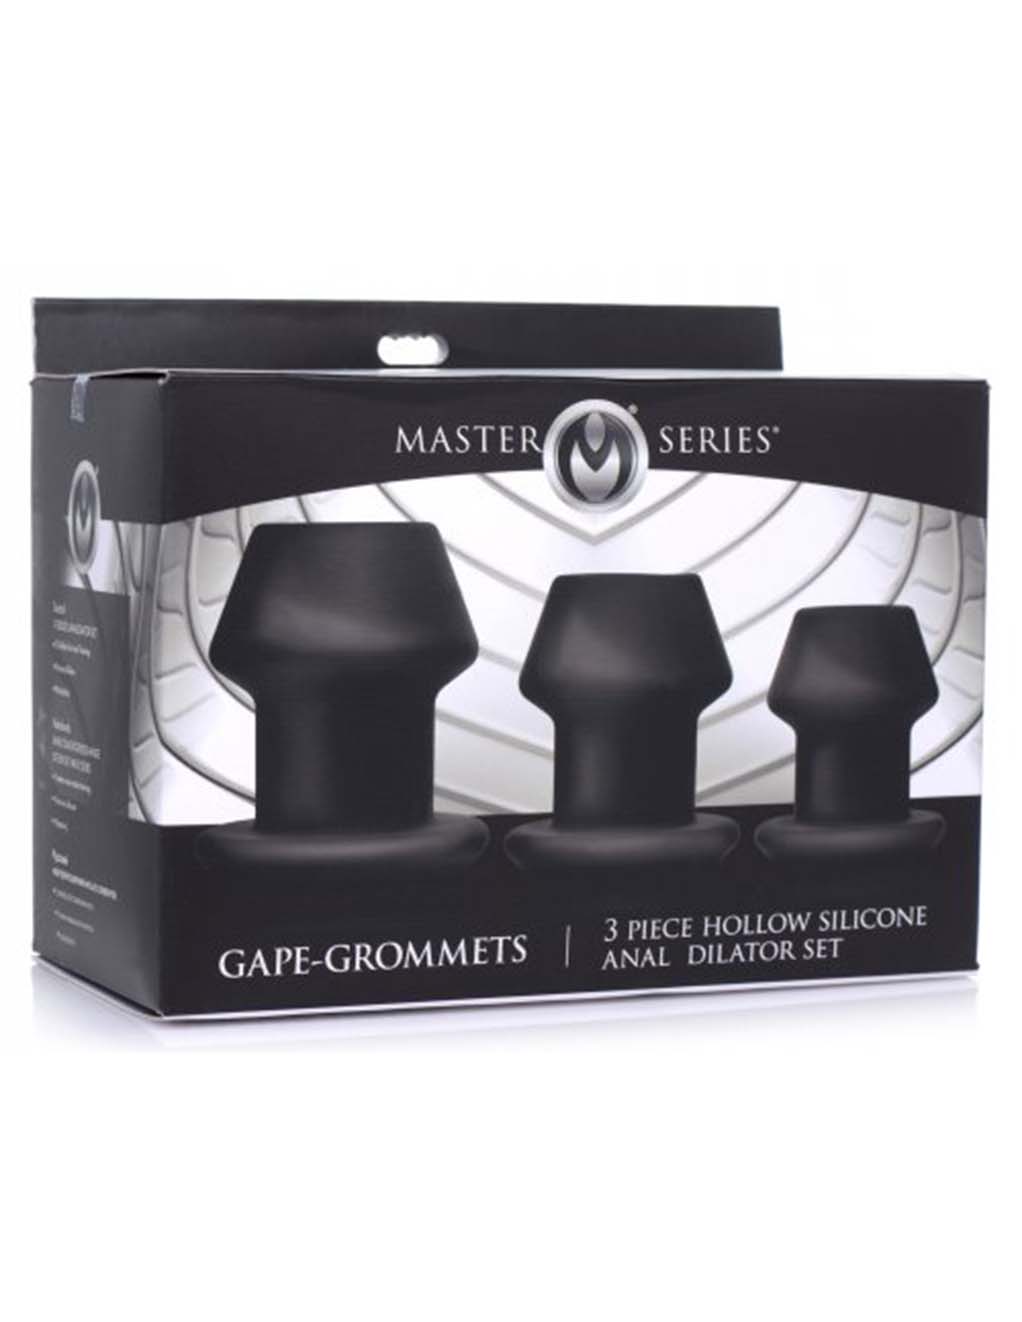 Master Series Gape-Grommets